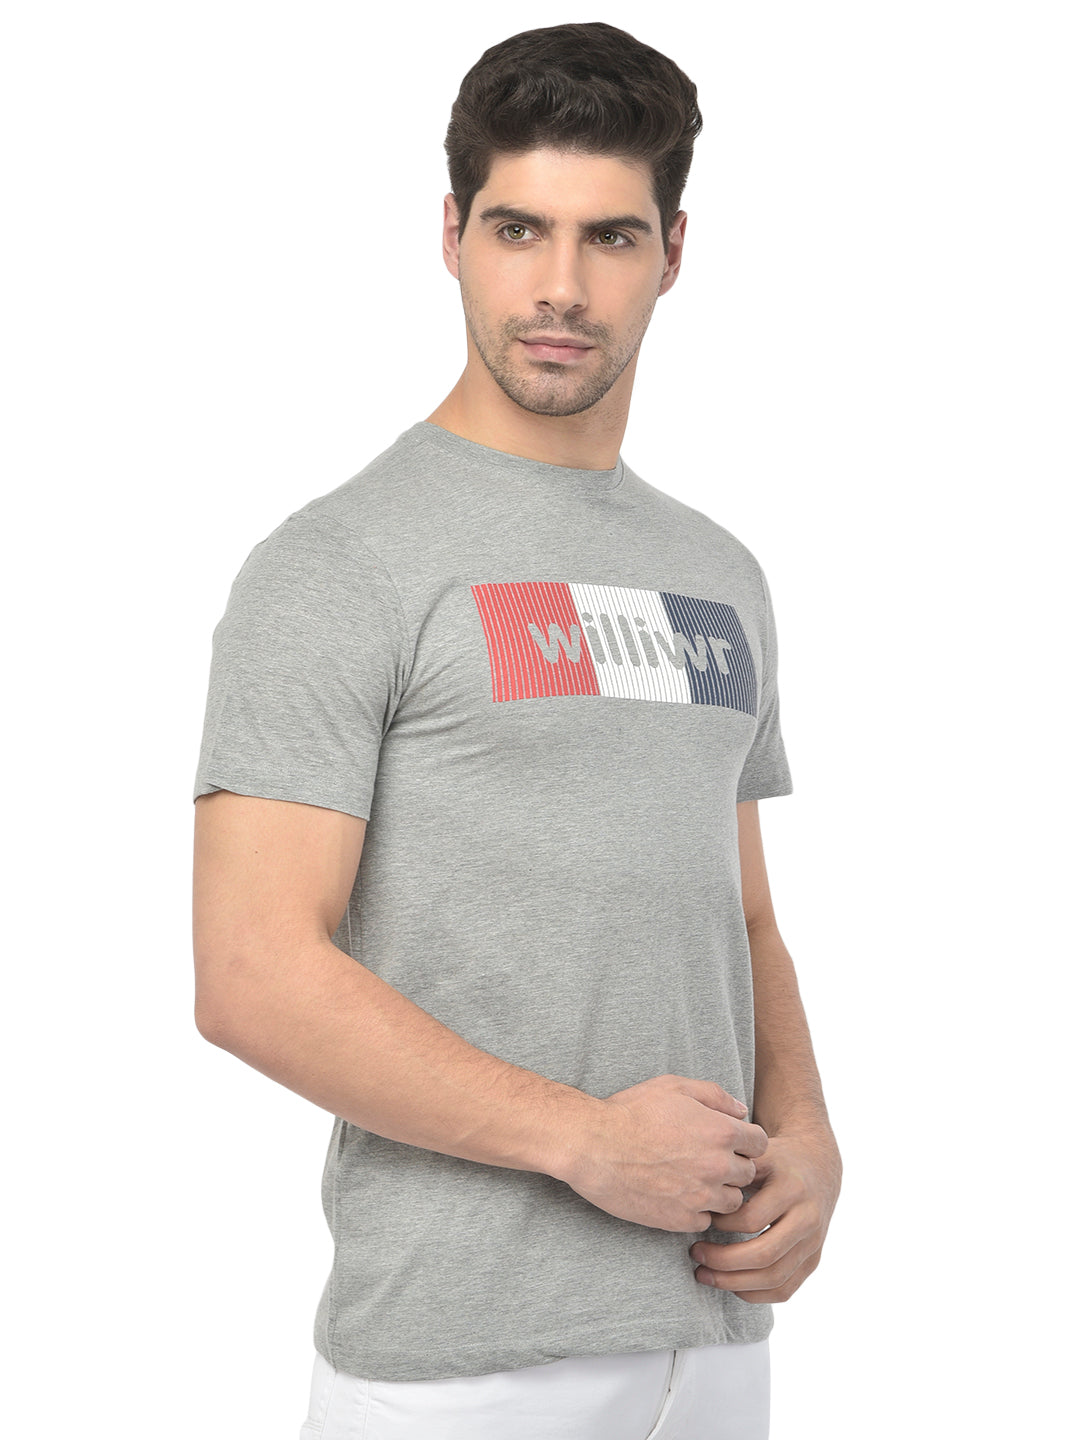 Men's Round Neck T-Shirt